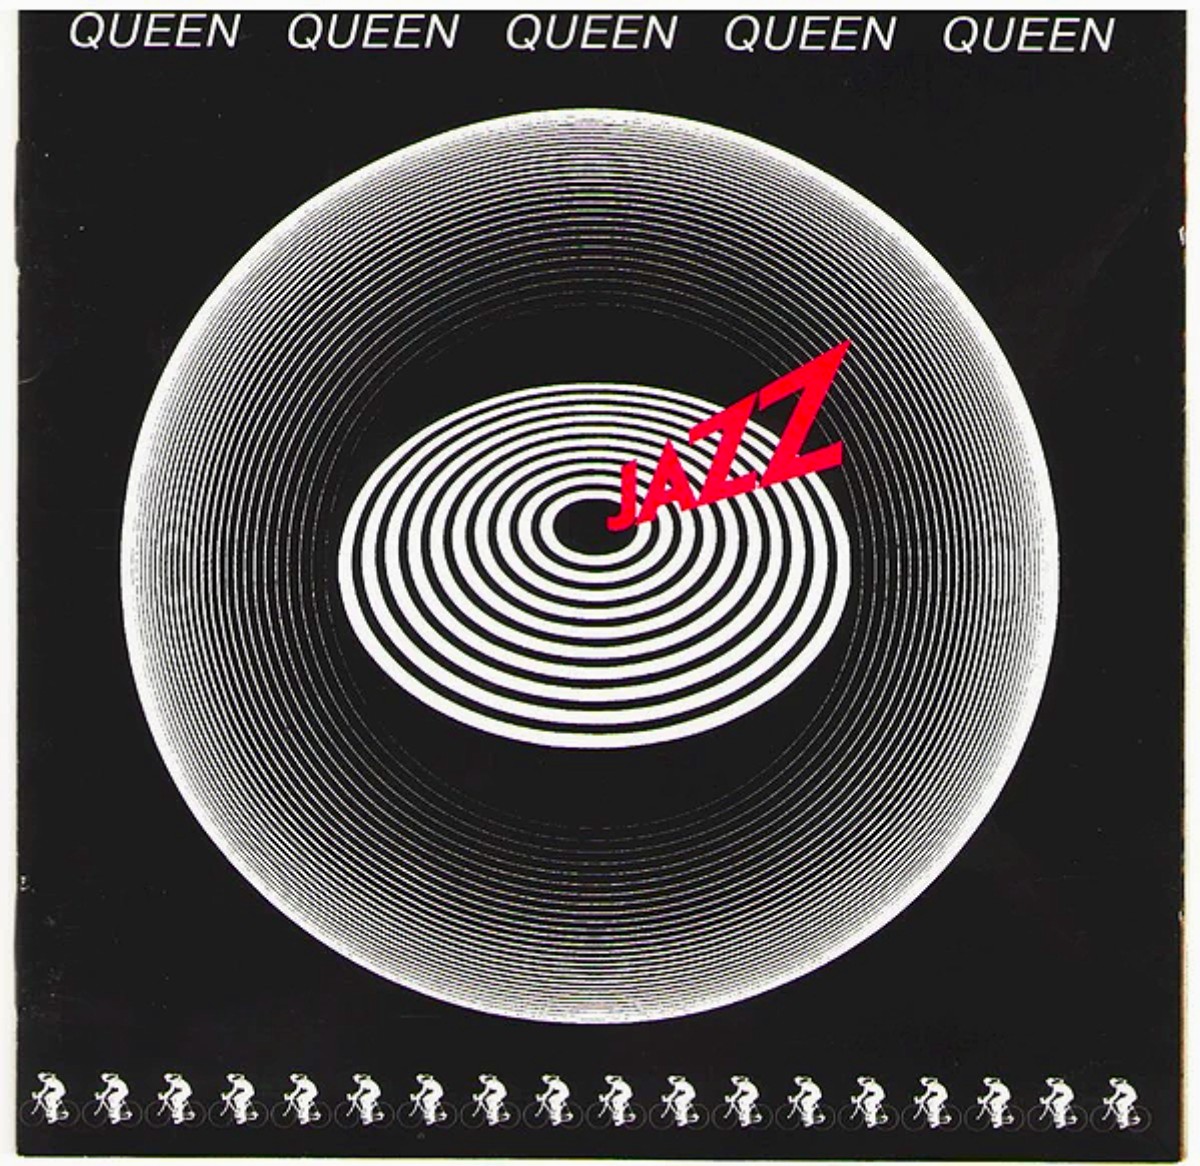 Queen, álbum de jazz